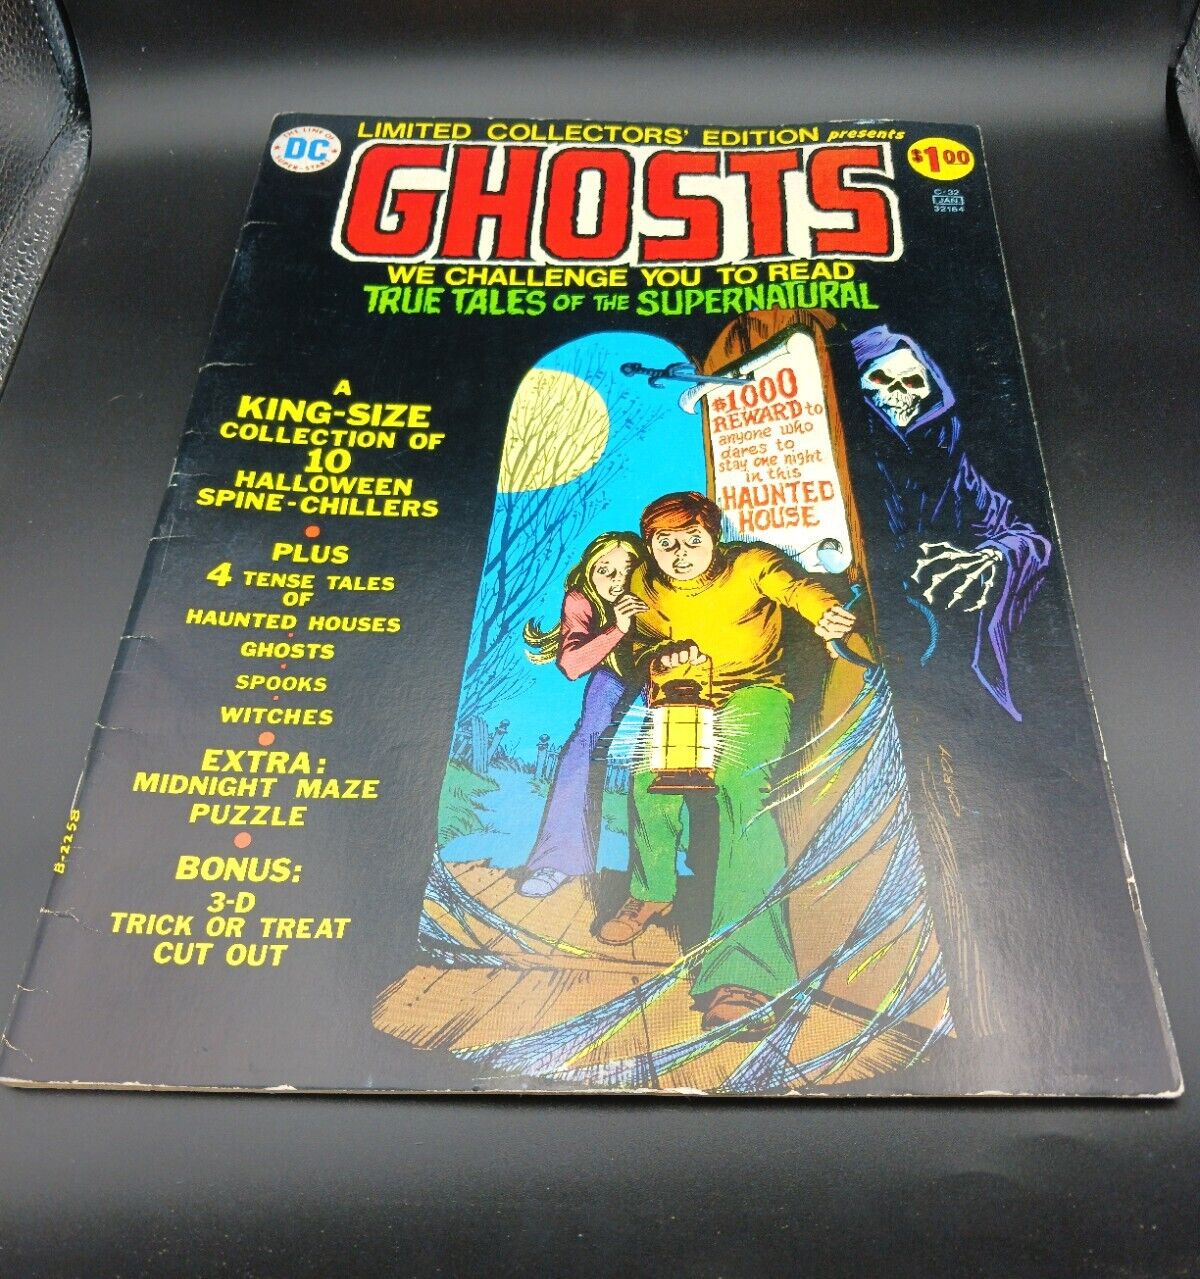 Ghosts Dec Jan 1974/75 D.C. Comics Limited Collectors Edition Vol 3 No. C-32